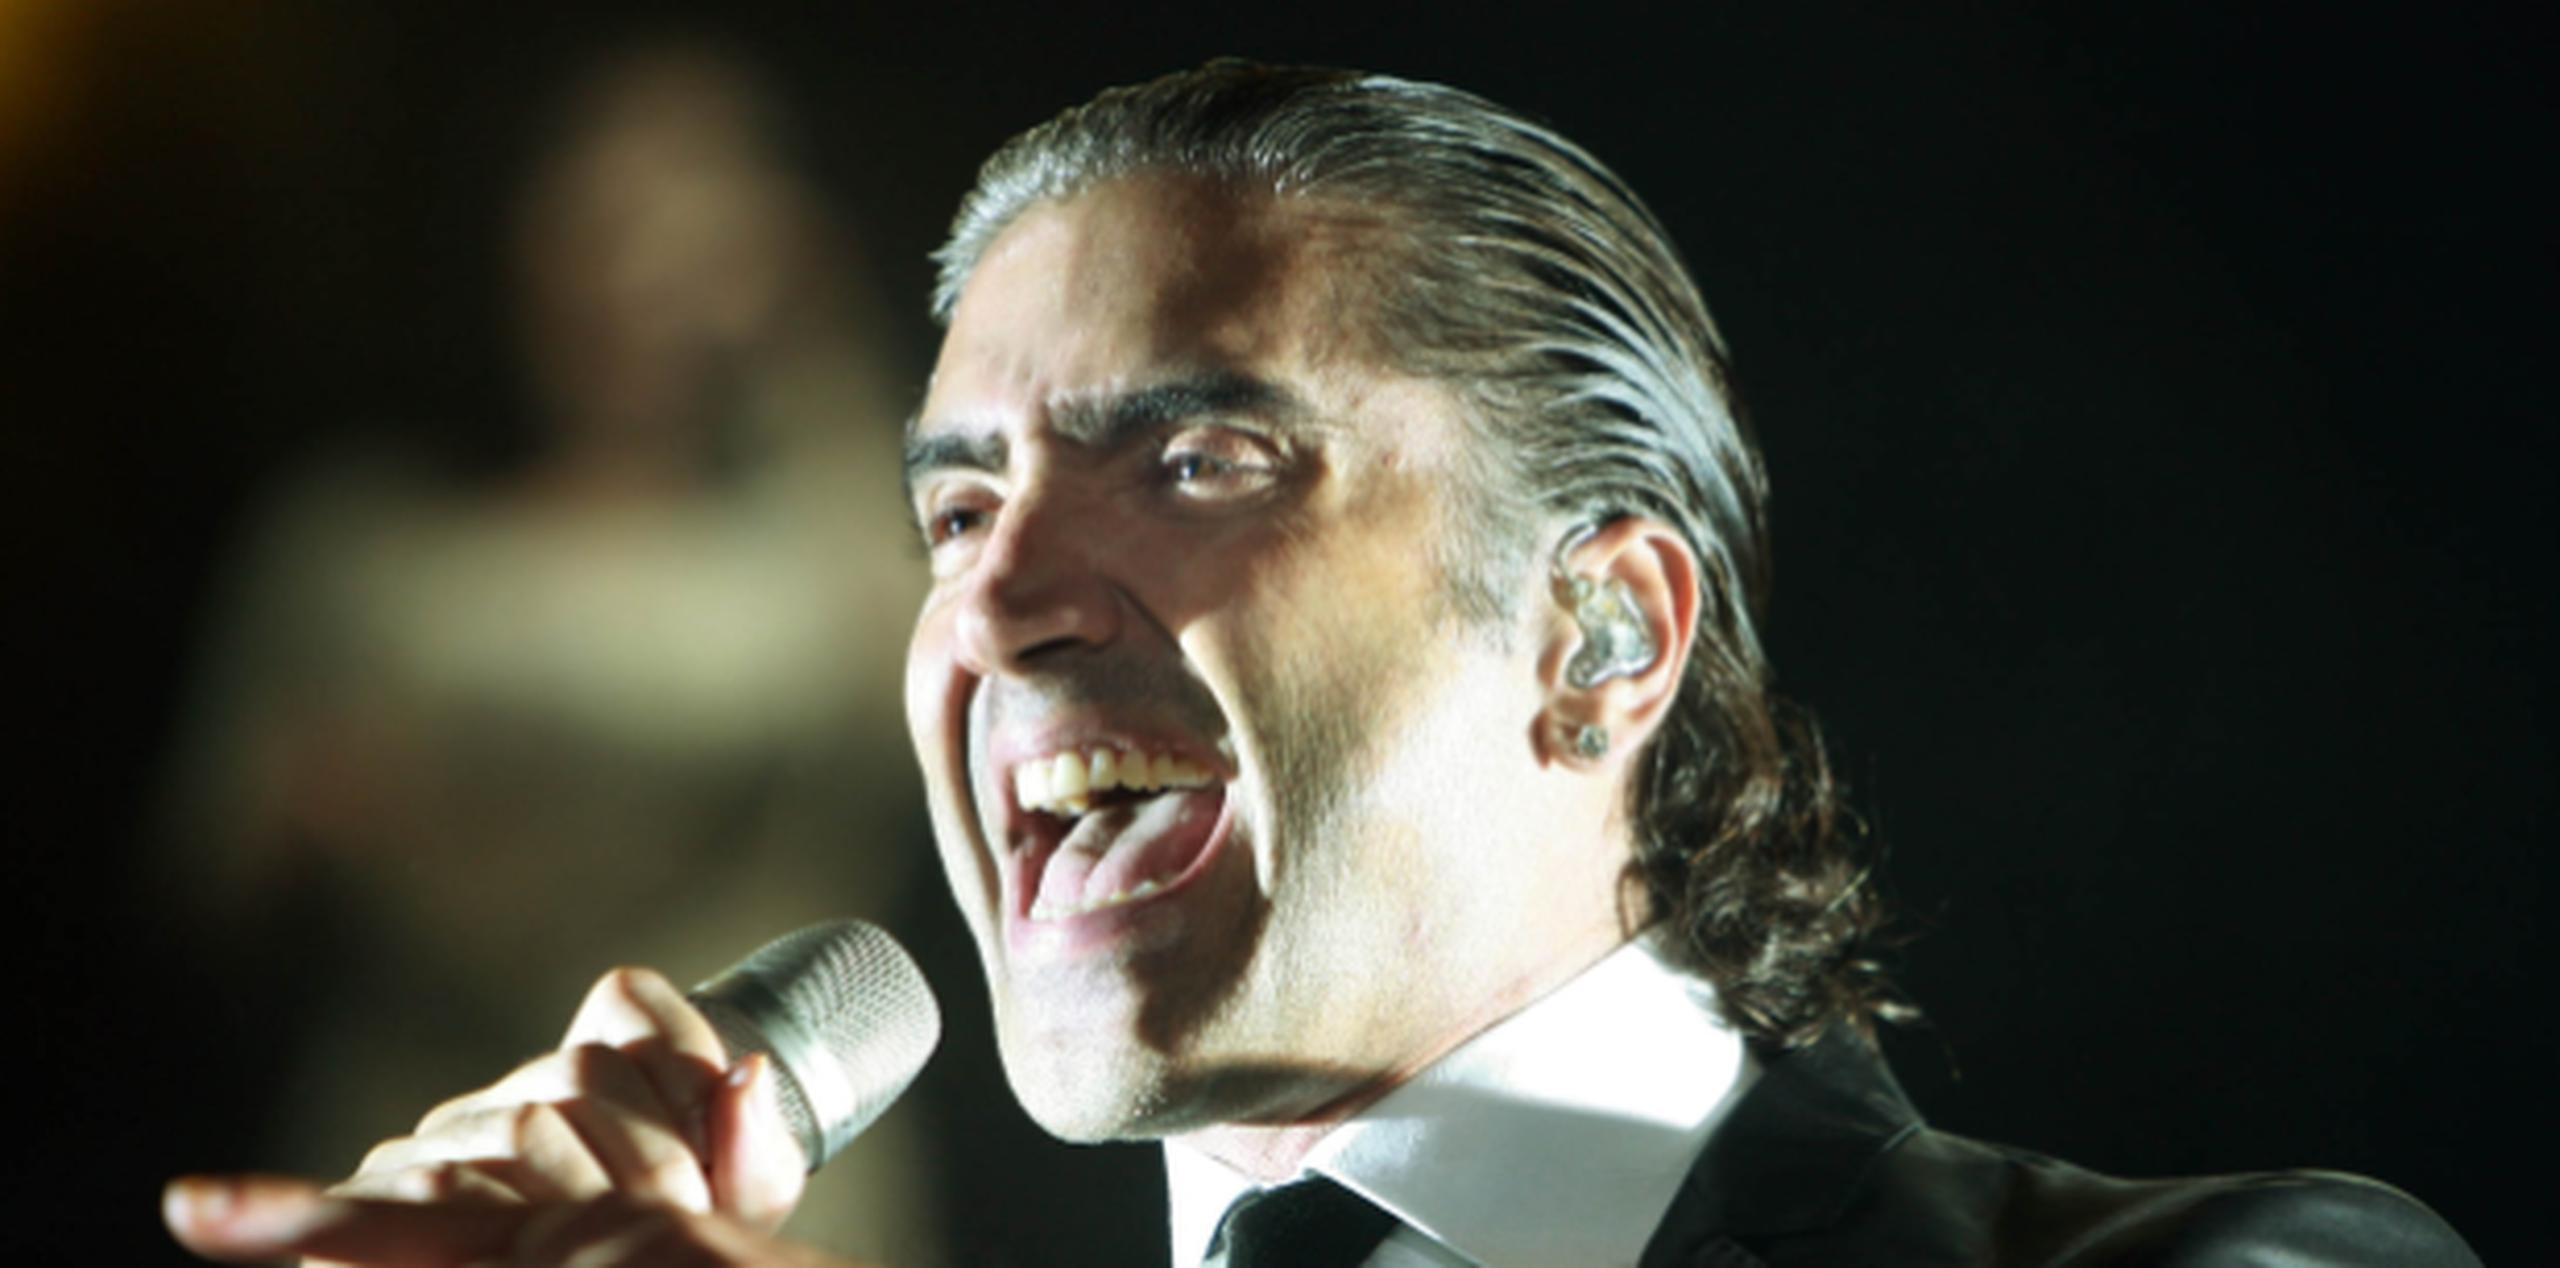 Alejandro Fernández se ha mantenido en 12 puesto de los conciertos más lucrativos por dos semanas consecutivas. (Archivo)